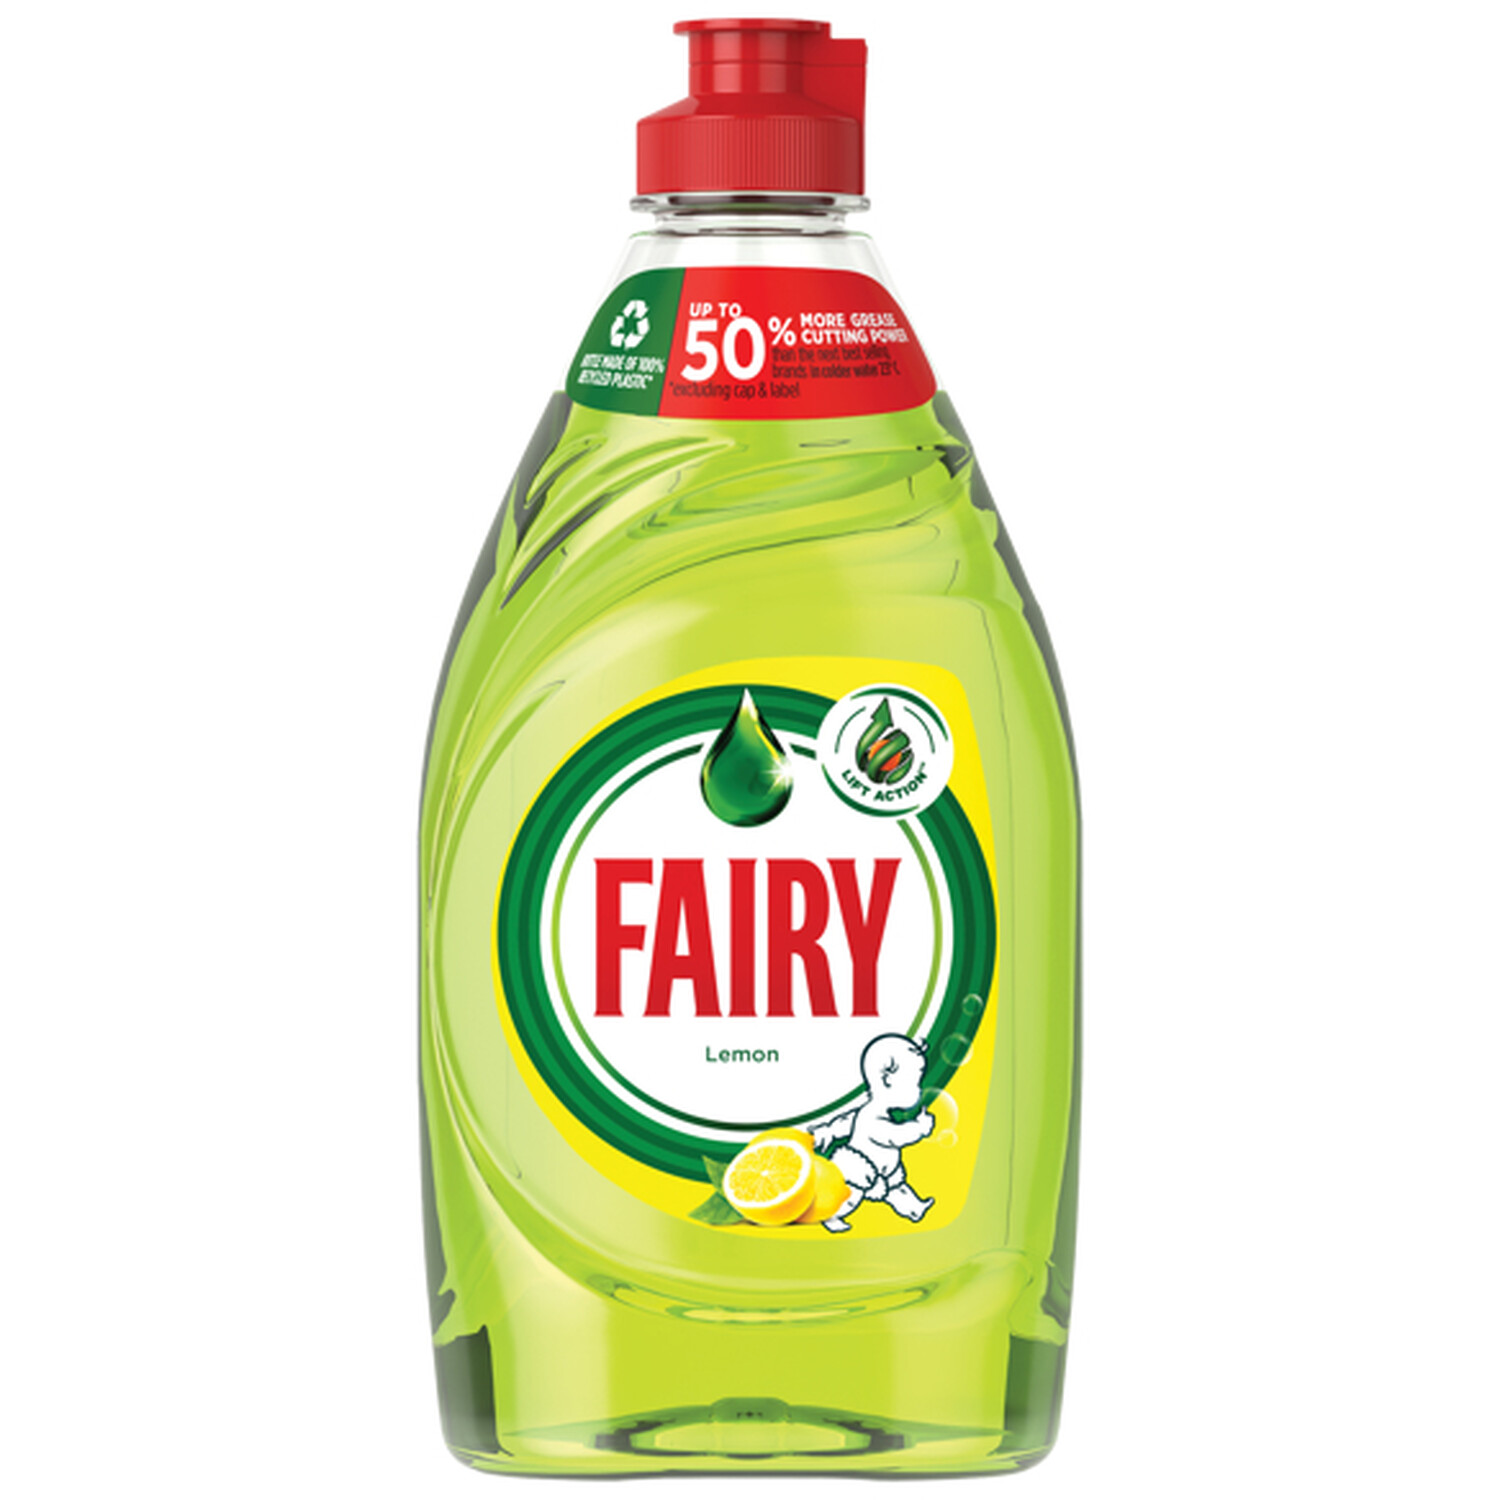 Fairy Washing Up Liquid - 320ml / Lemon Image